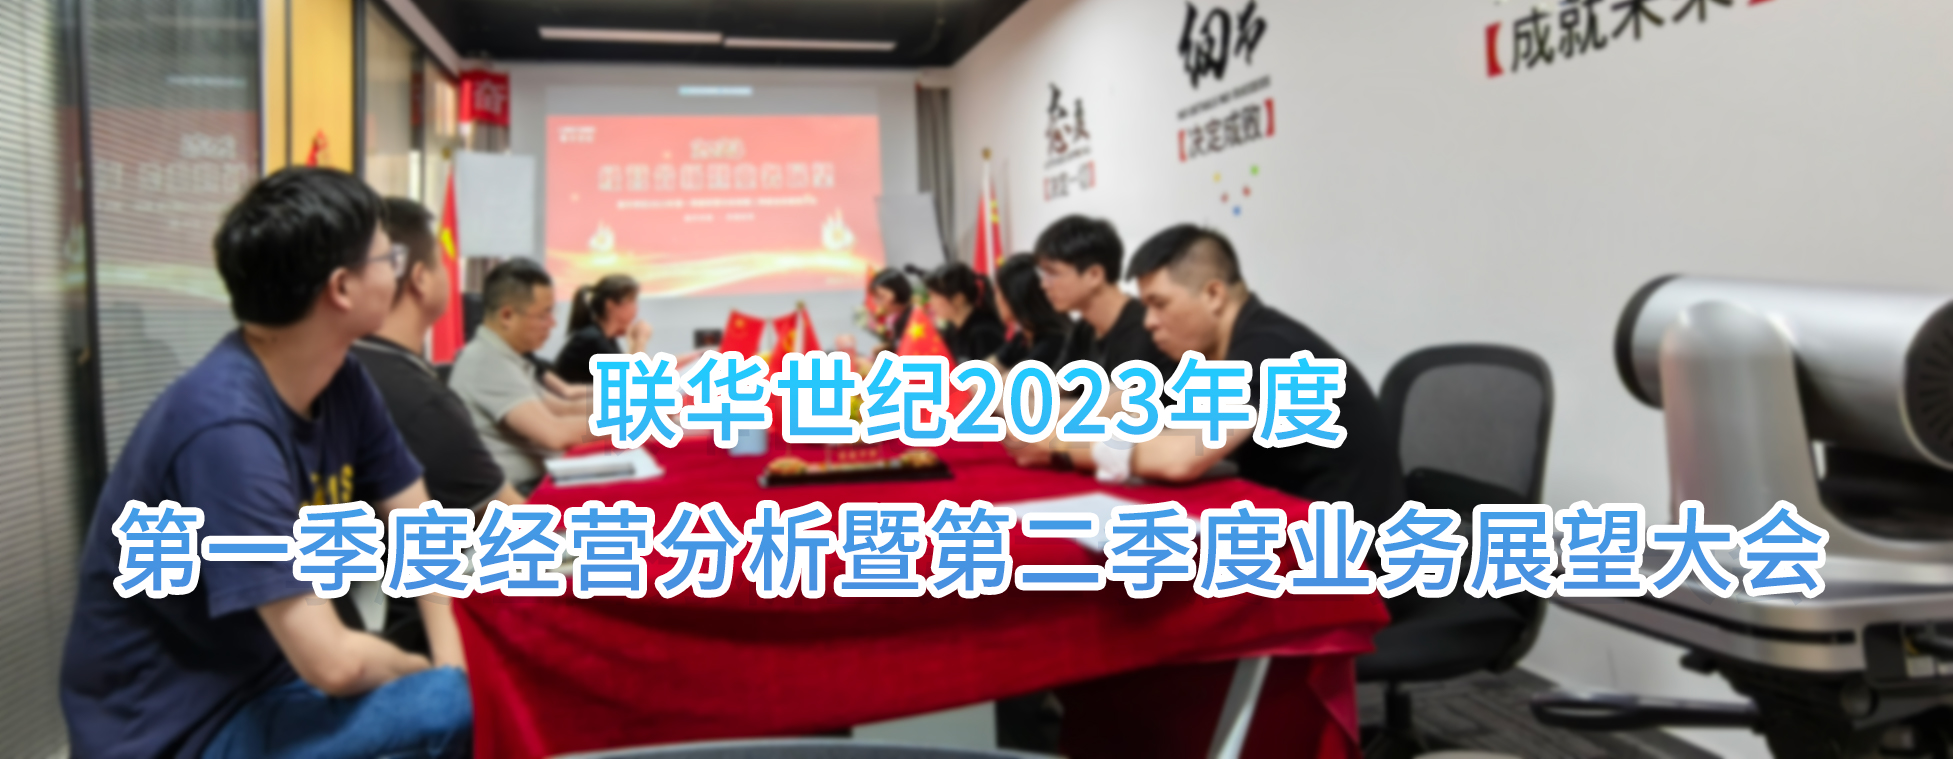 联华世纪召开2023第一季度经营分析暨第二季度业务展望大会